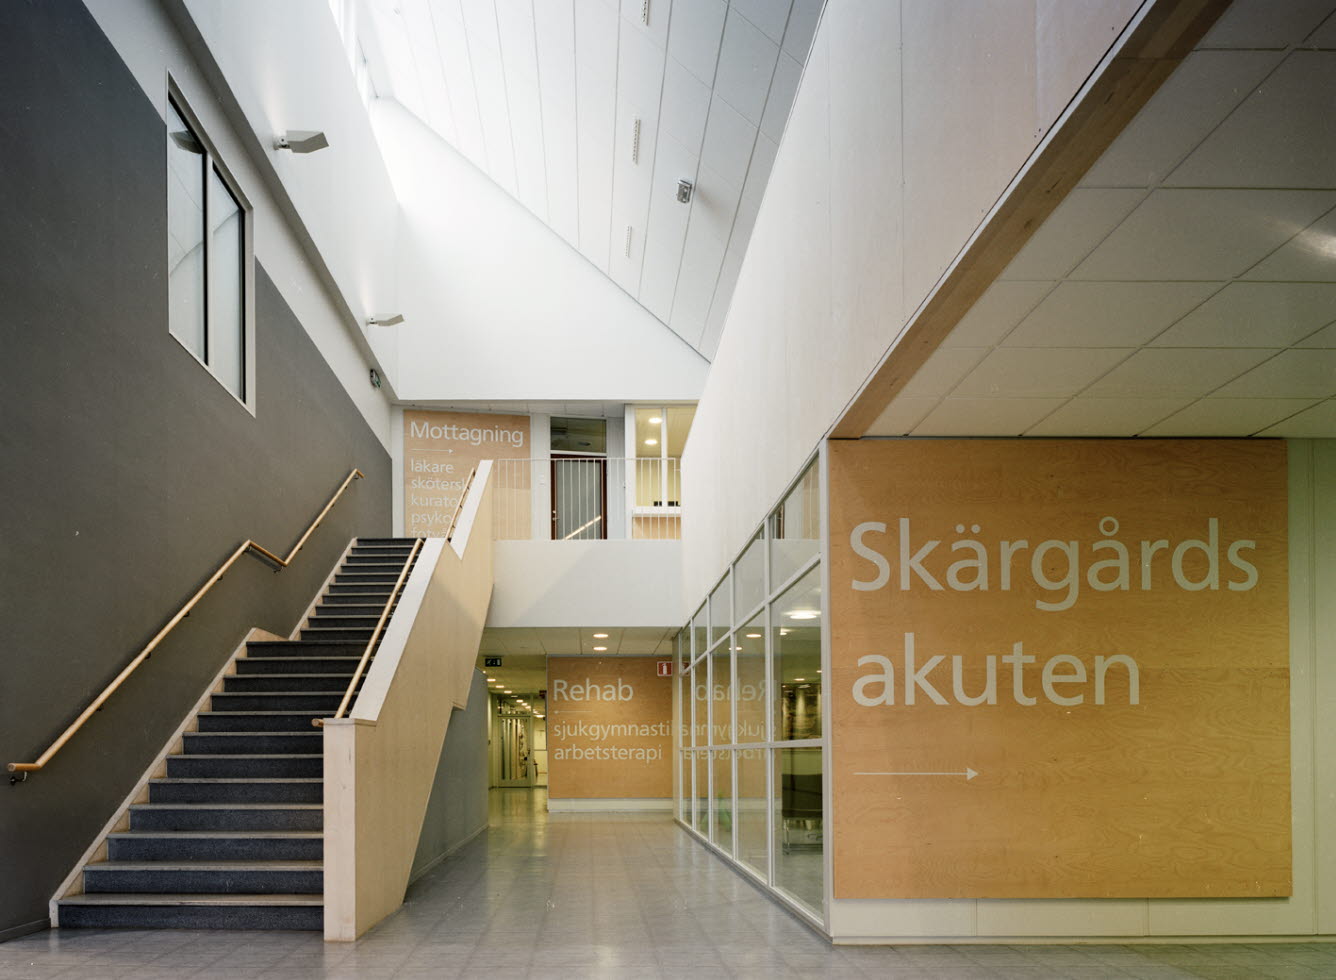 Trappa och korridor på Skärgårdsakuten.